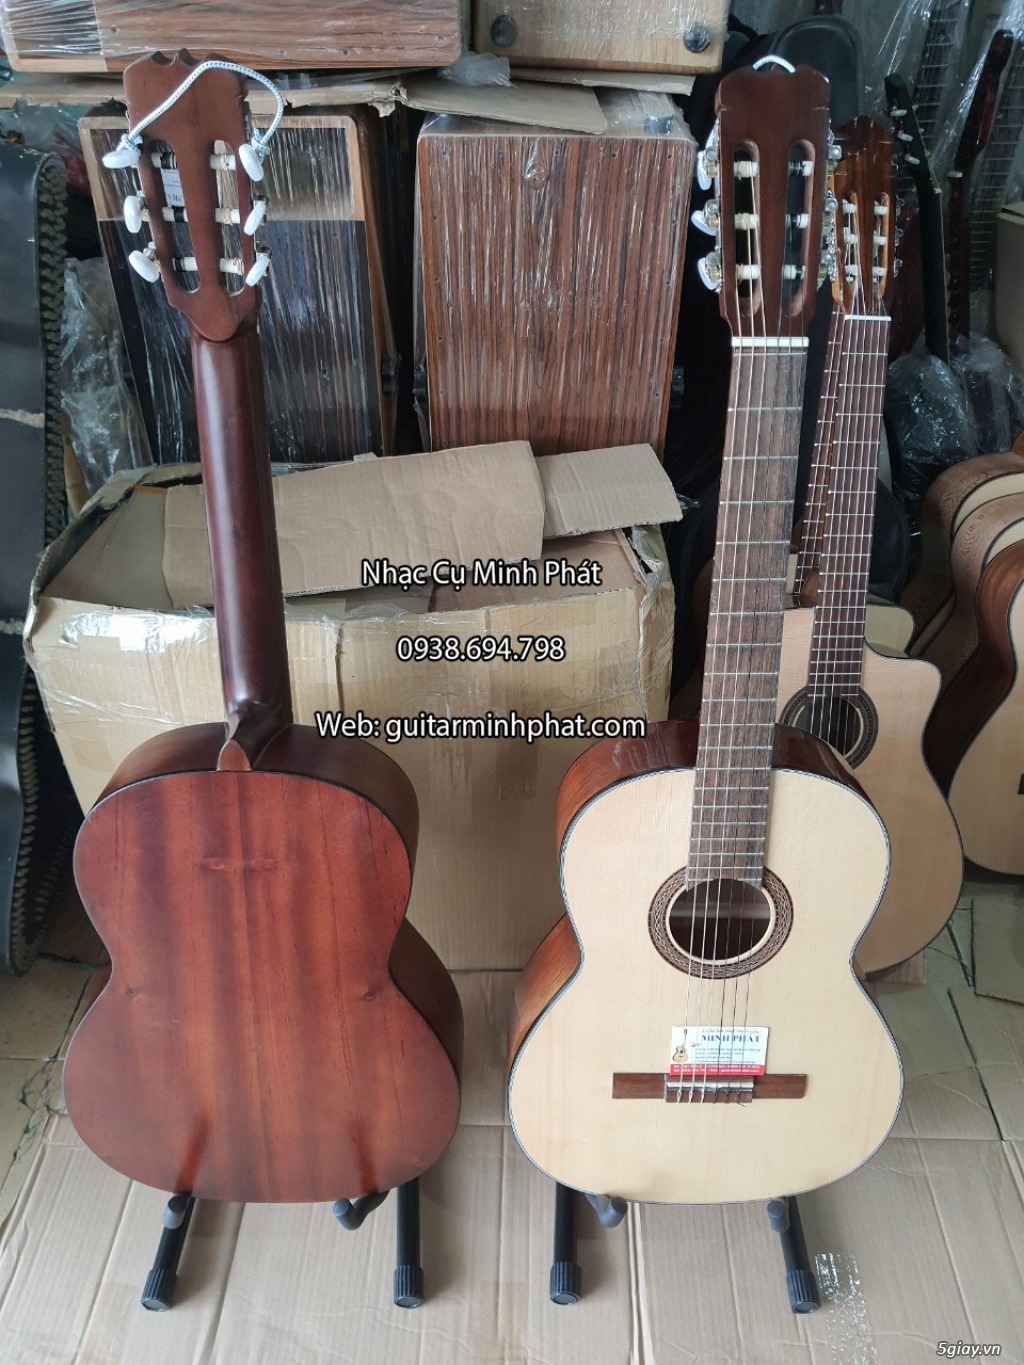 Bán đàn guitar, ukulele, kalimba giá rẻ ở quận Gò Vấp TPHCM - 20